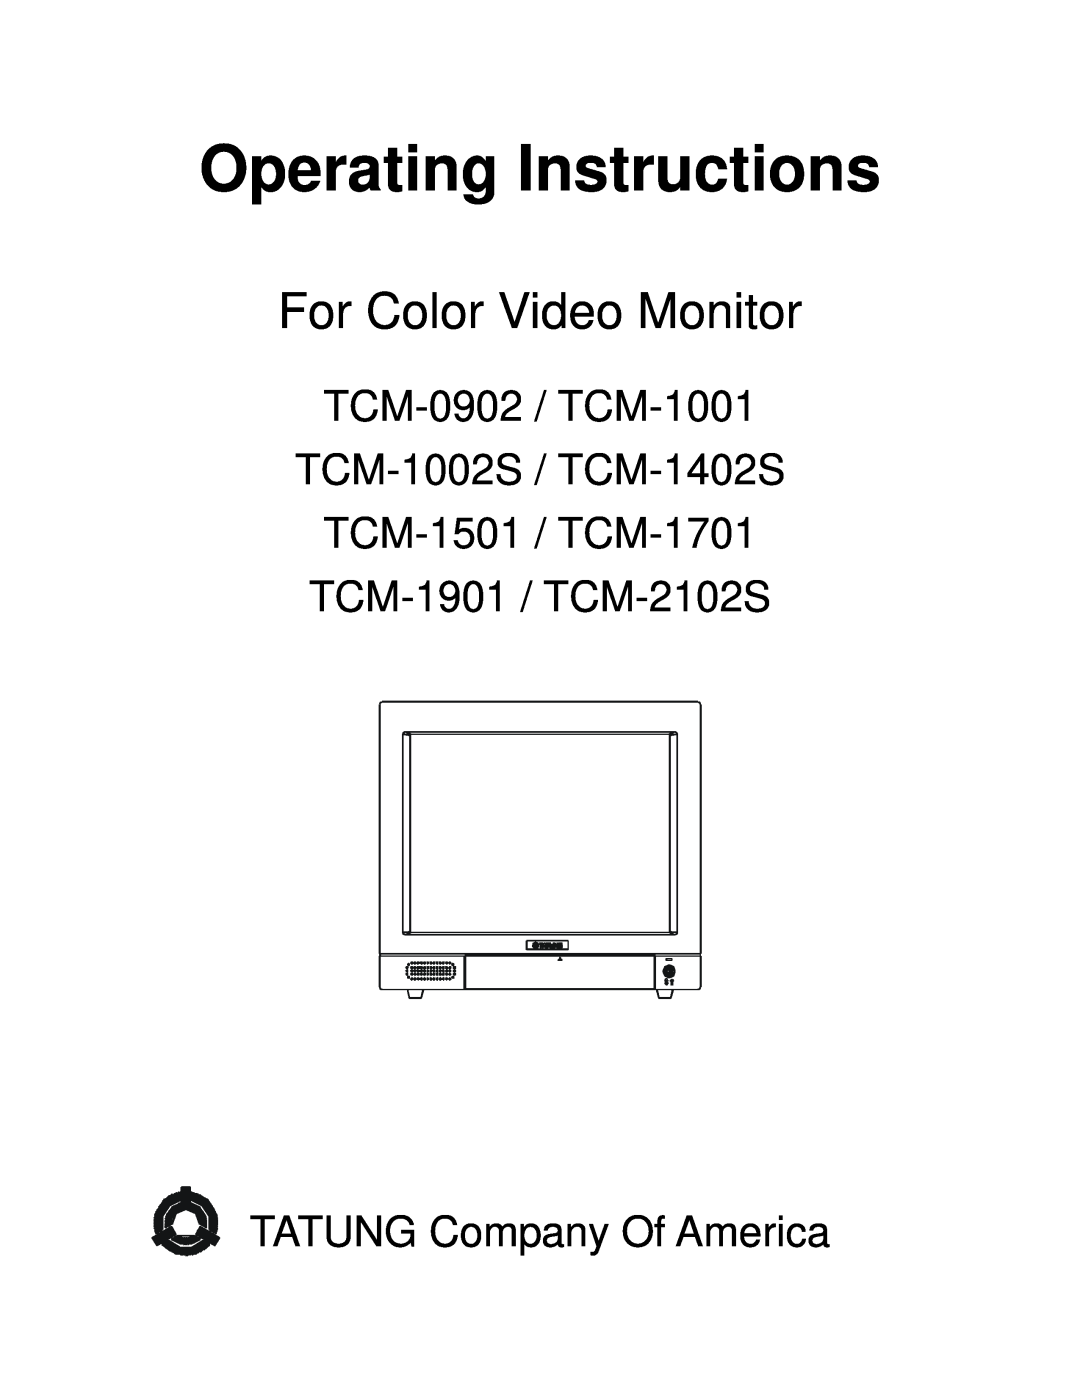 Tatung TCM-2102s manual Operating Instructions, For Color Video Monitor, TCM-0902 / TCM-1001 TCM-1002S / TCM-1402S 